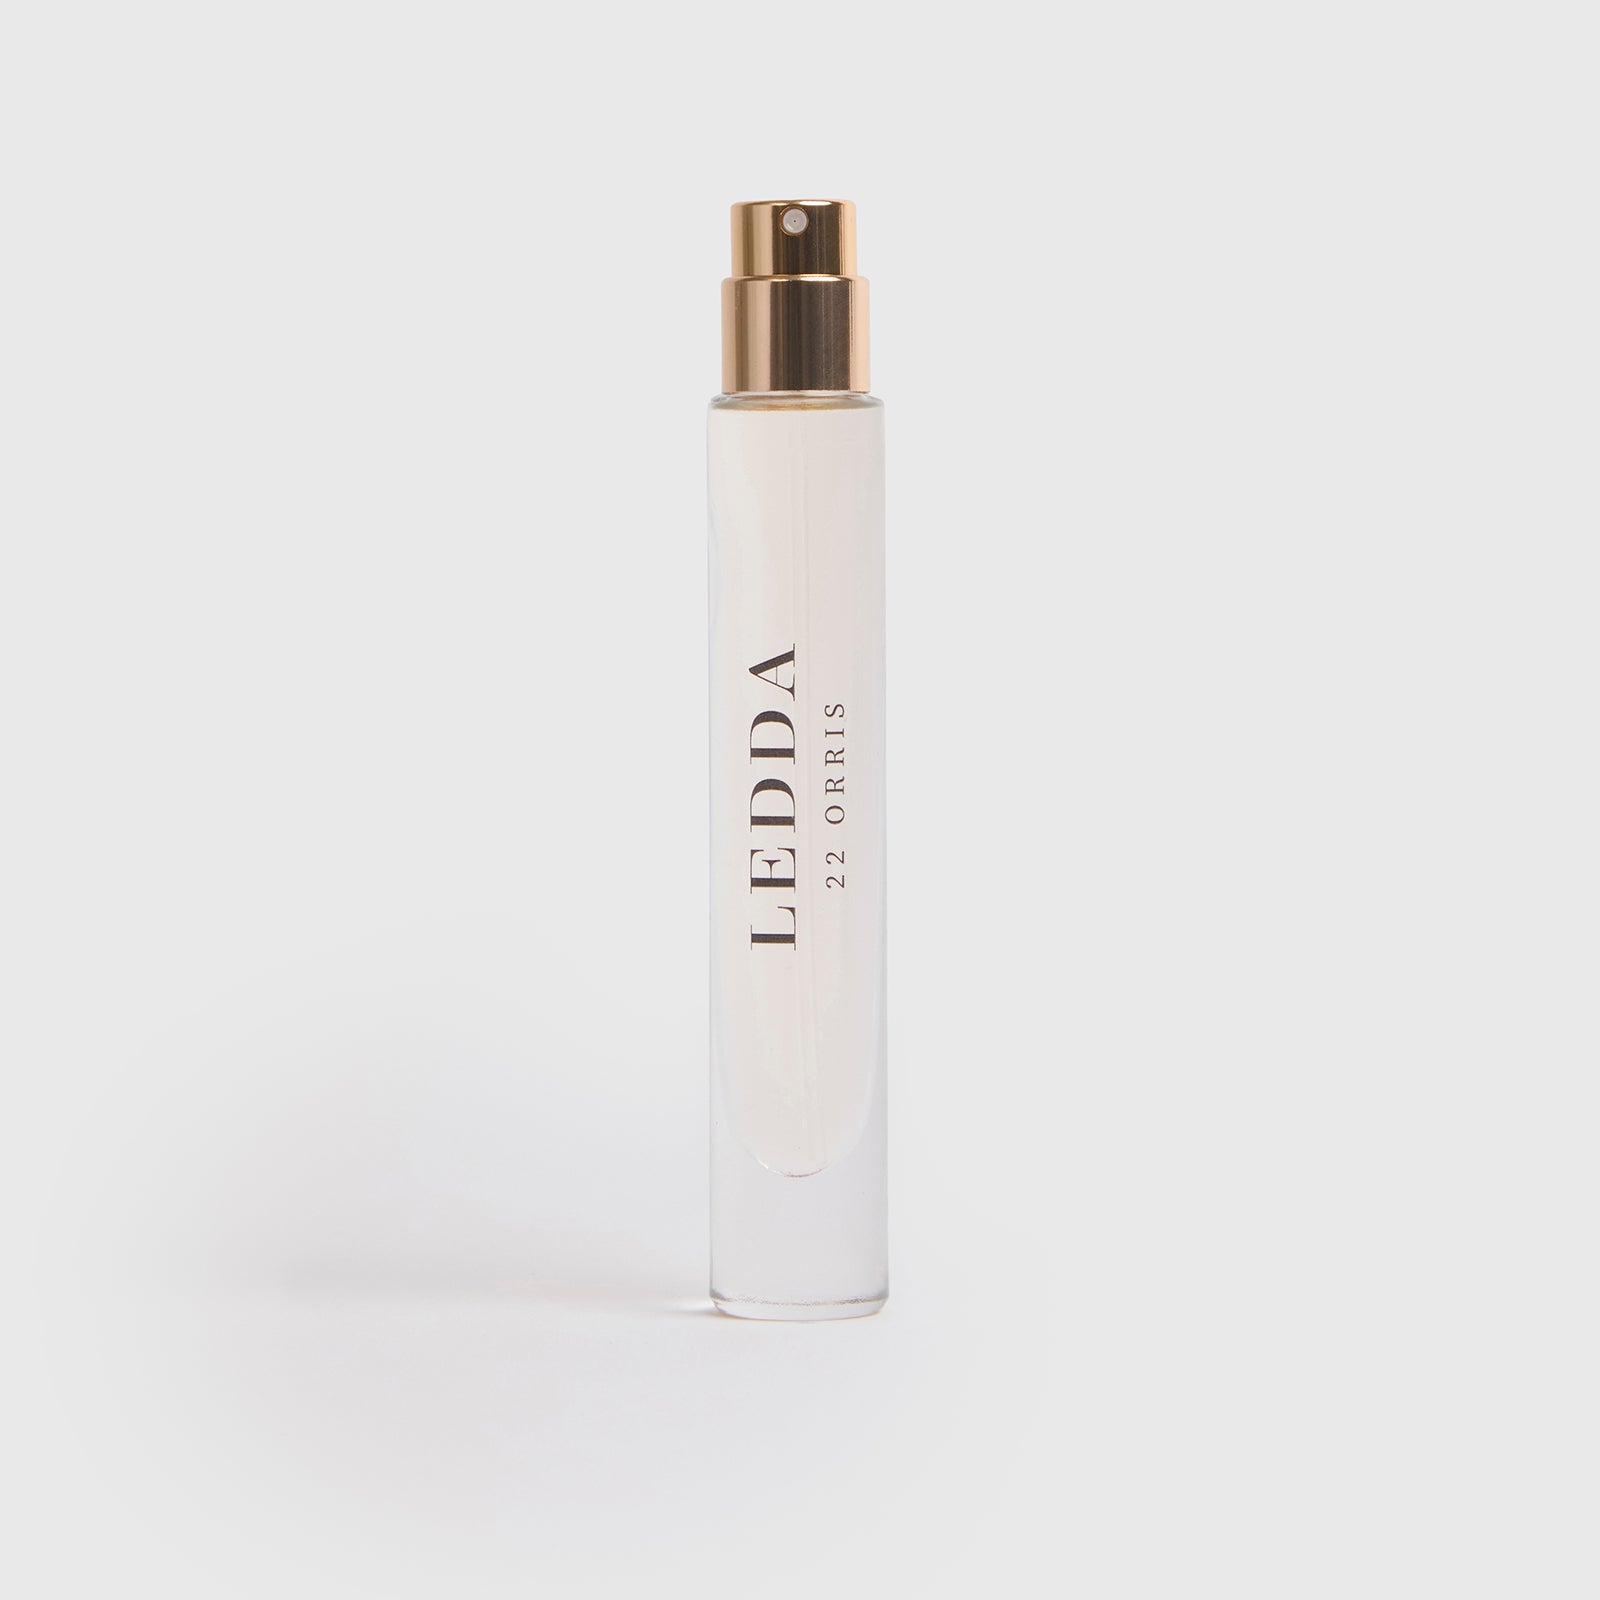 LEDDA Complete Fragrance Bundle